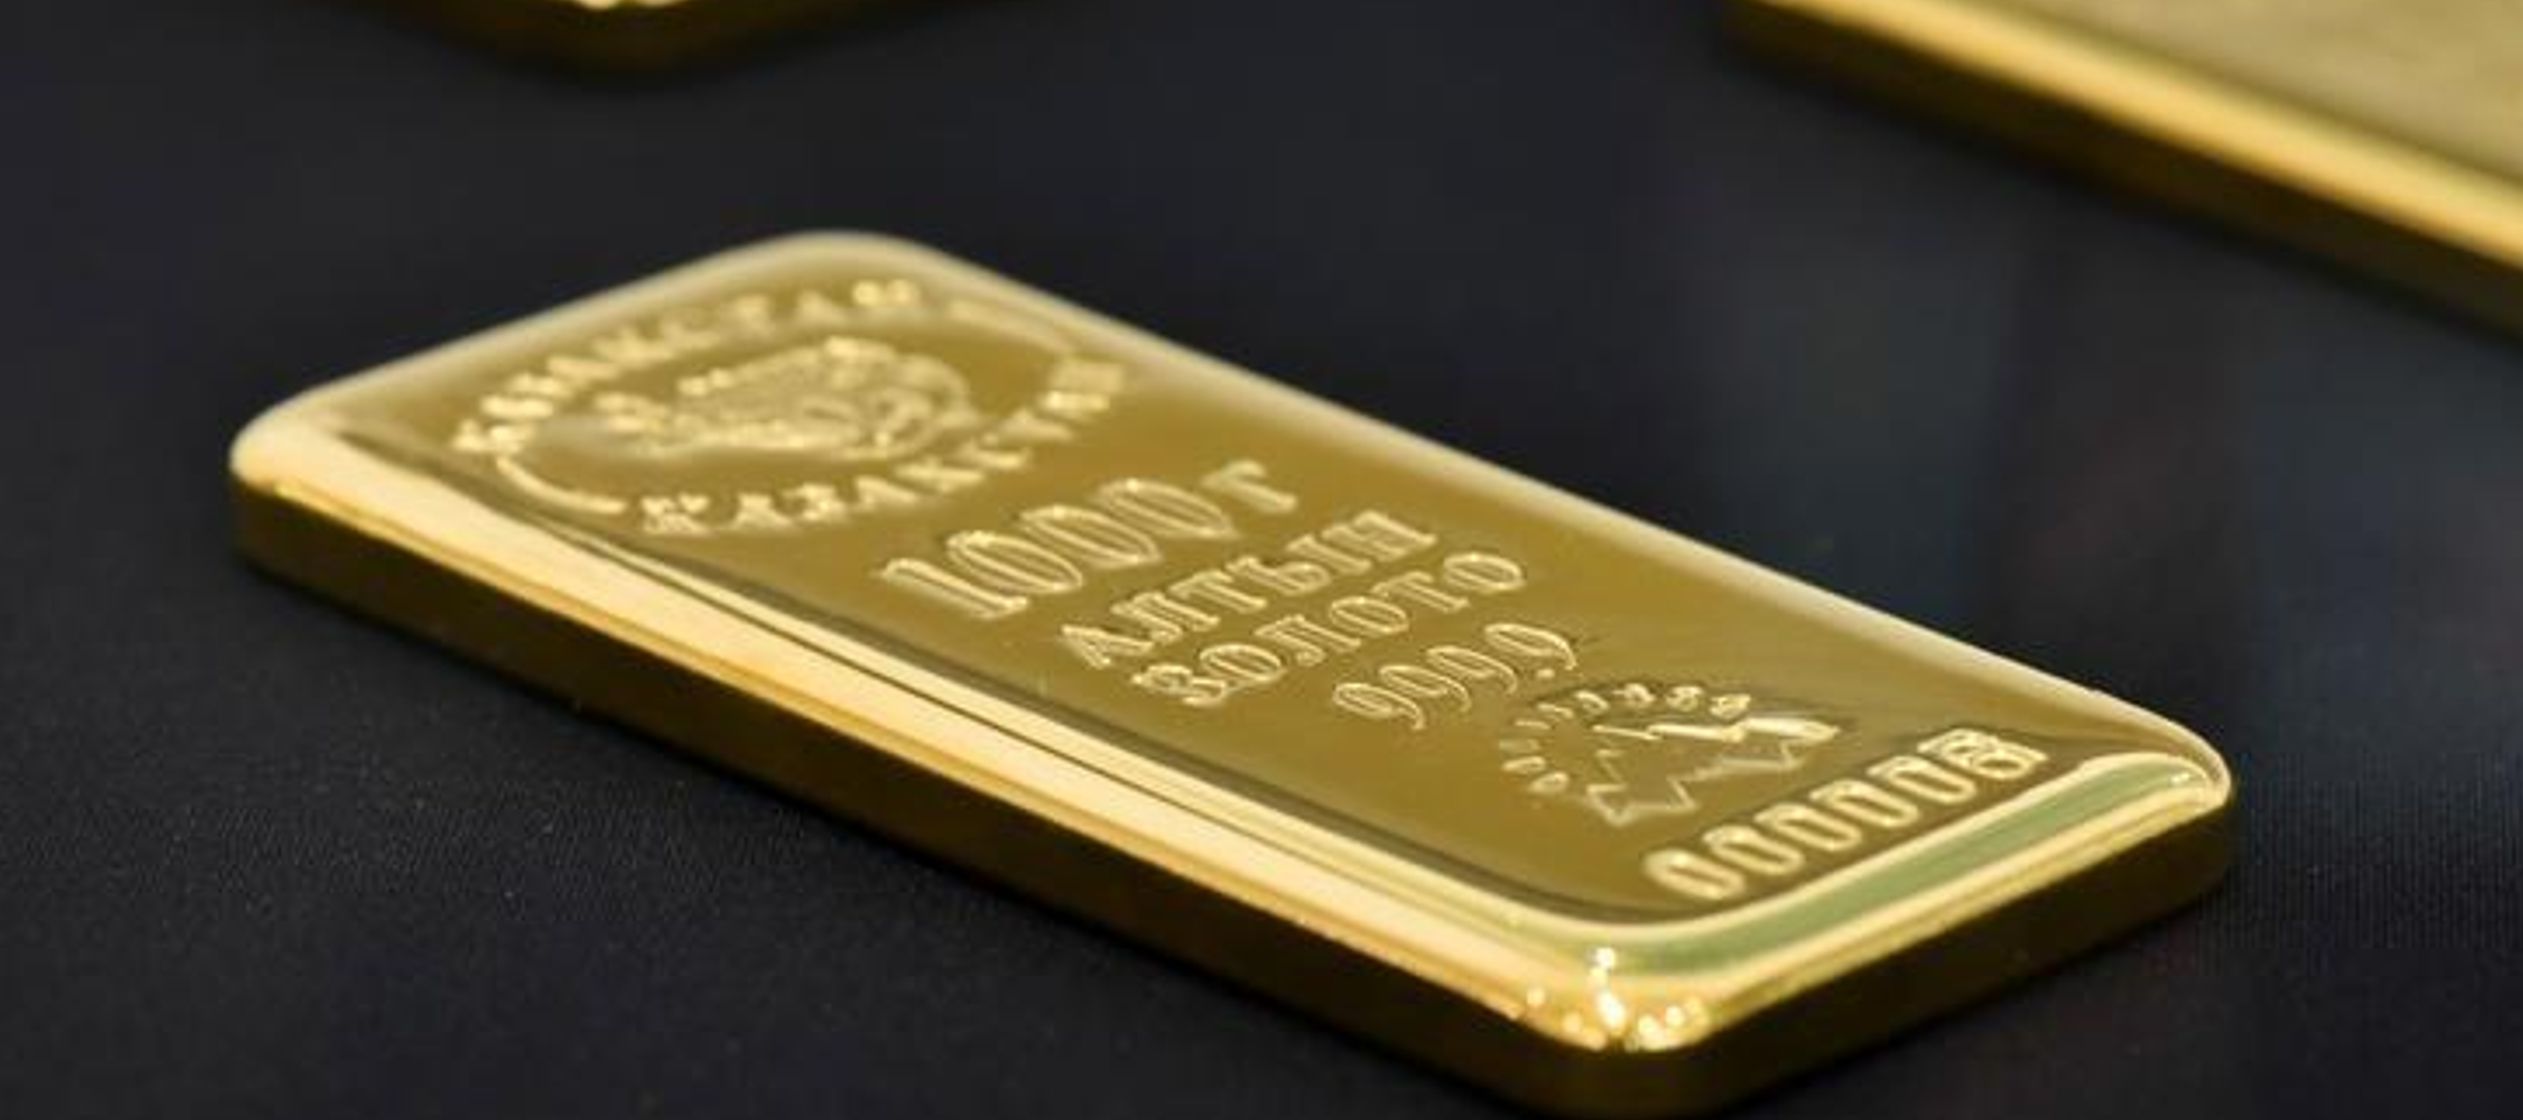 Los futuros del oro en Estados Unidos para entrega en agosto cerraron con un alza de 20 centavos, o...